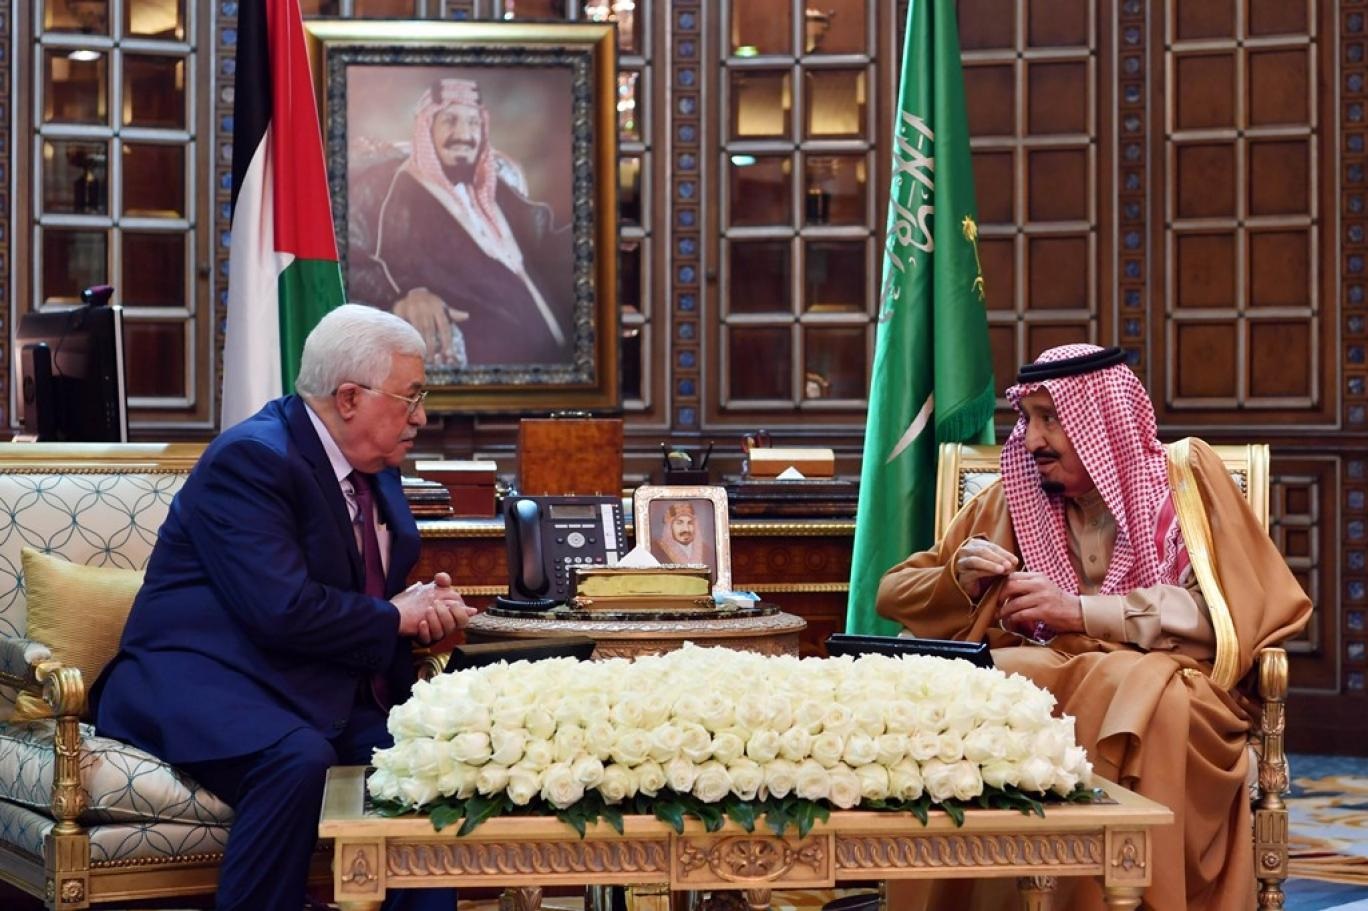 العلاقات السعودية الفلسطينية ،، توطيد وتأصيل للعمق العربي والإسلامي بين البلدين